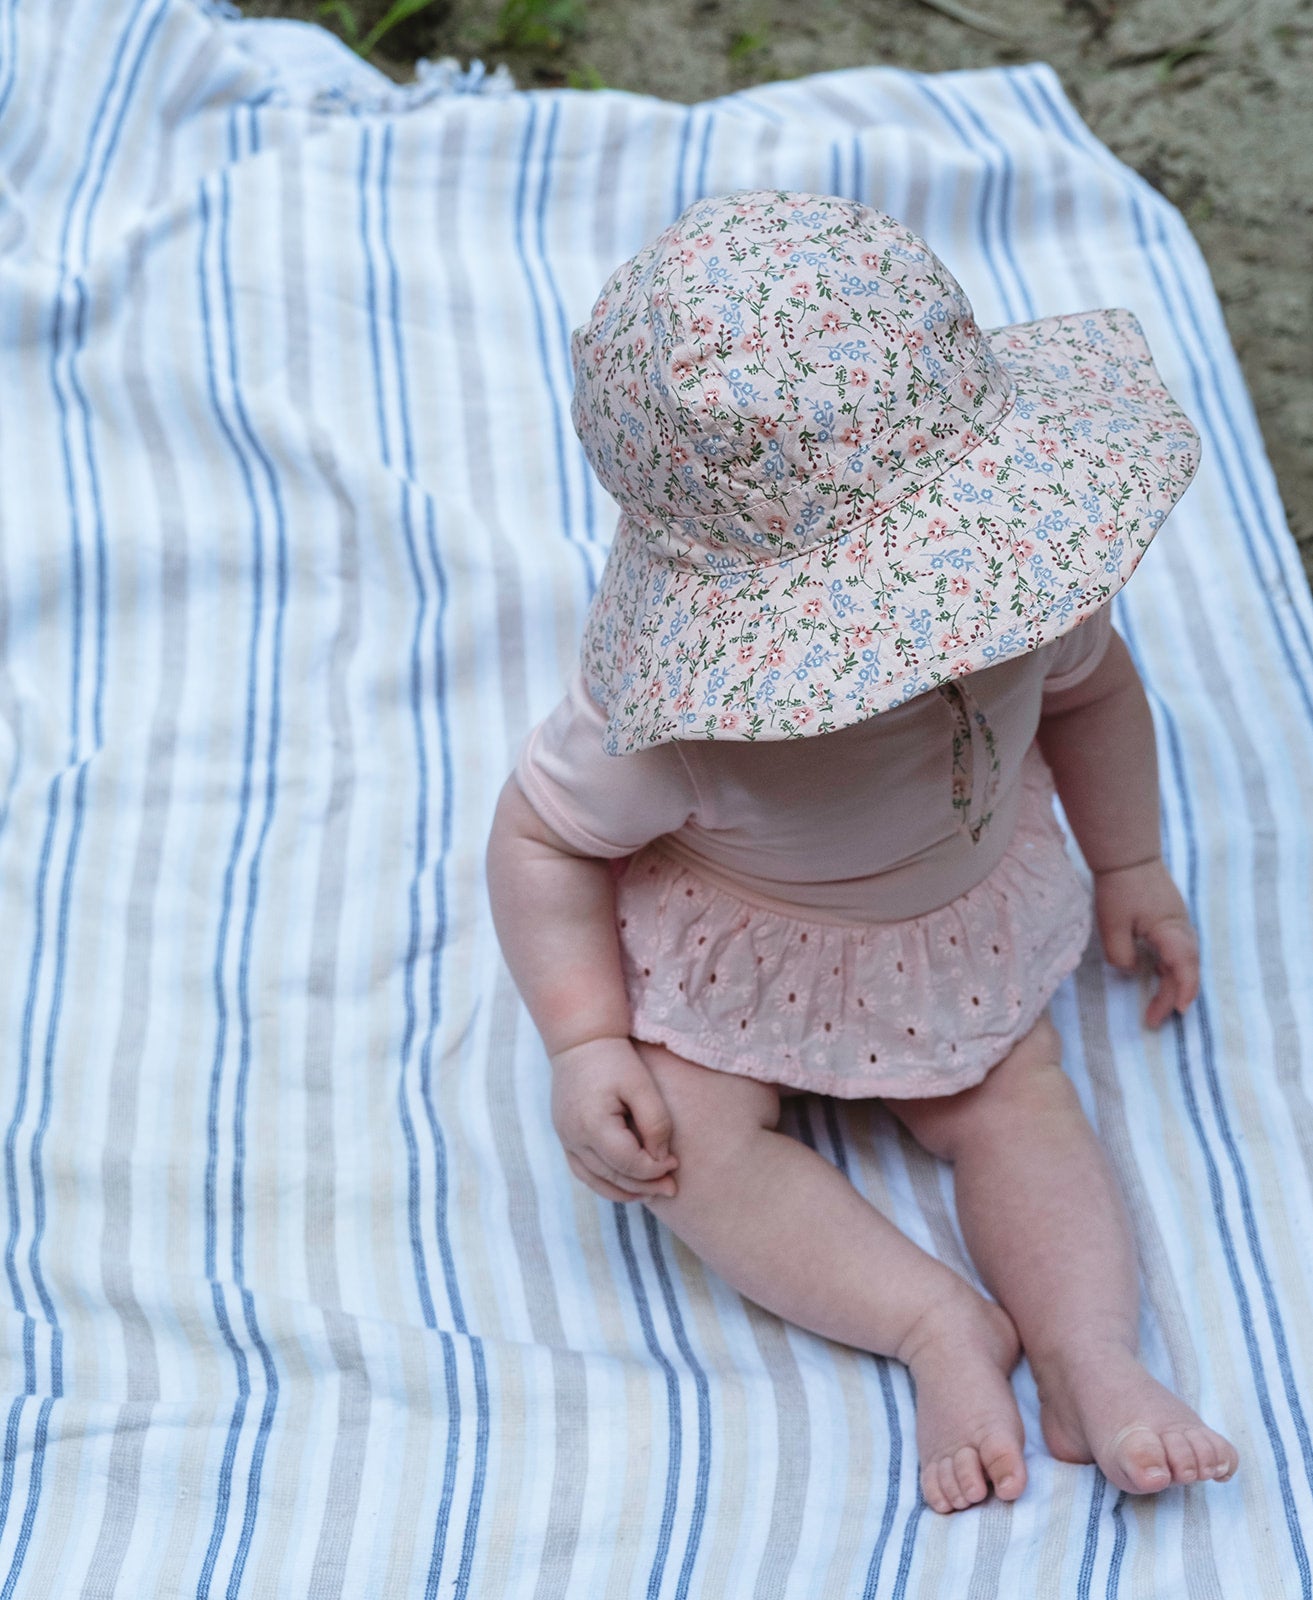 Acorn - Primrose Wide Brim Infant Hat - Pink Floral